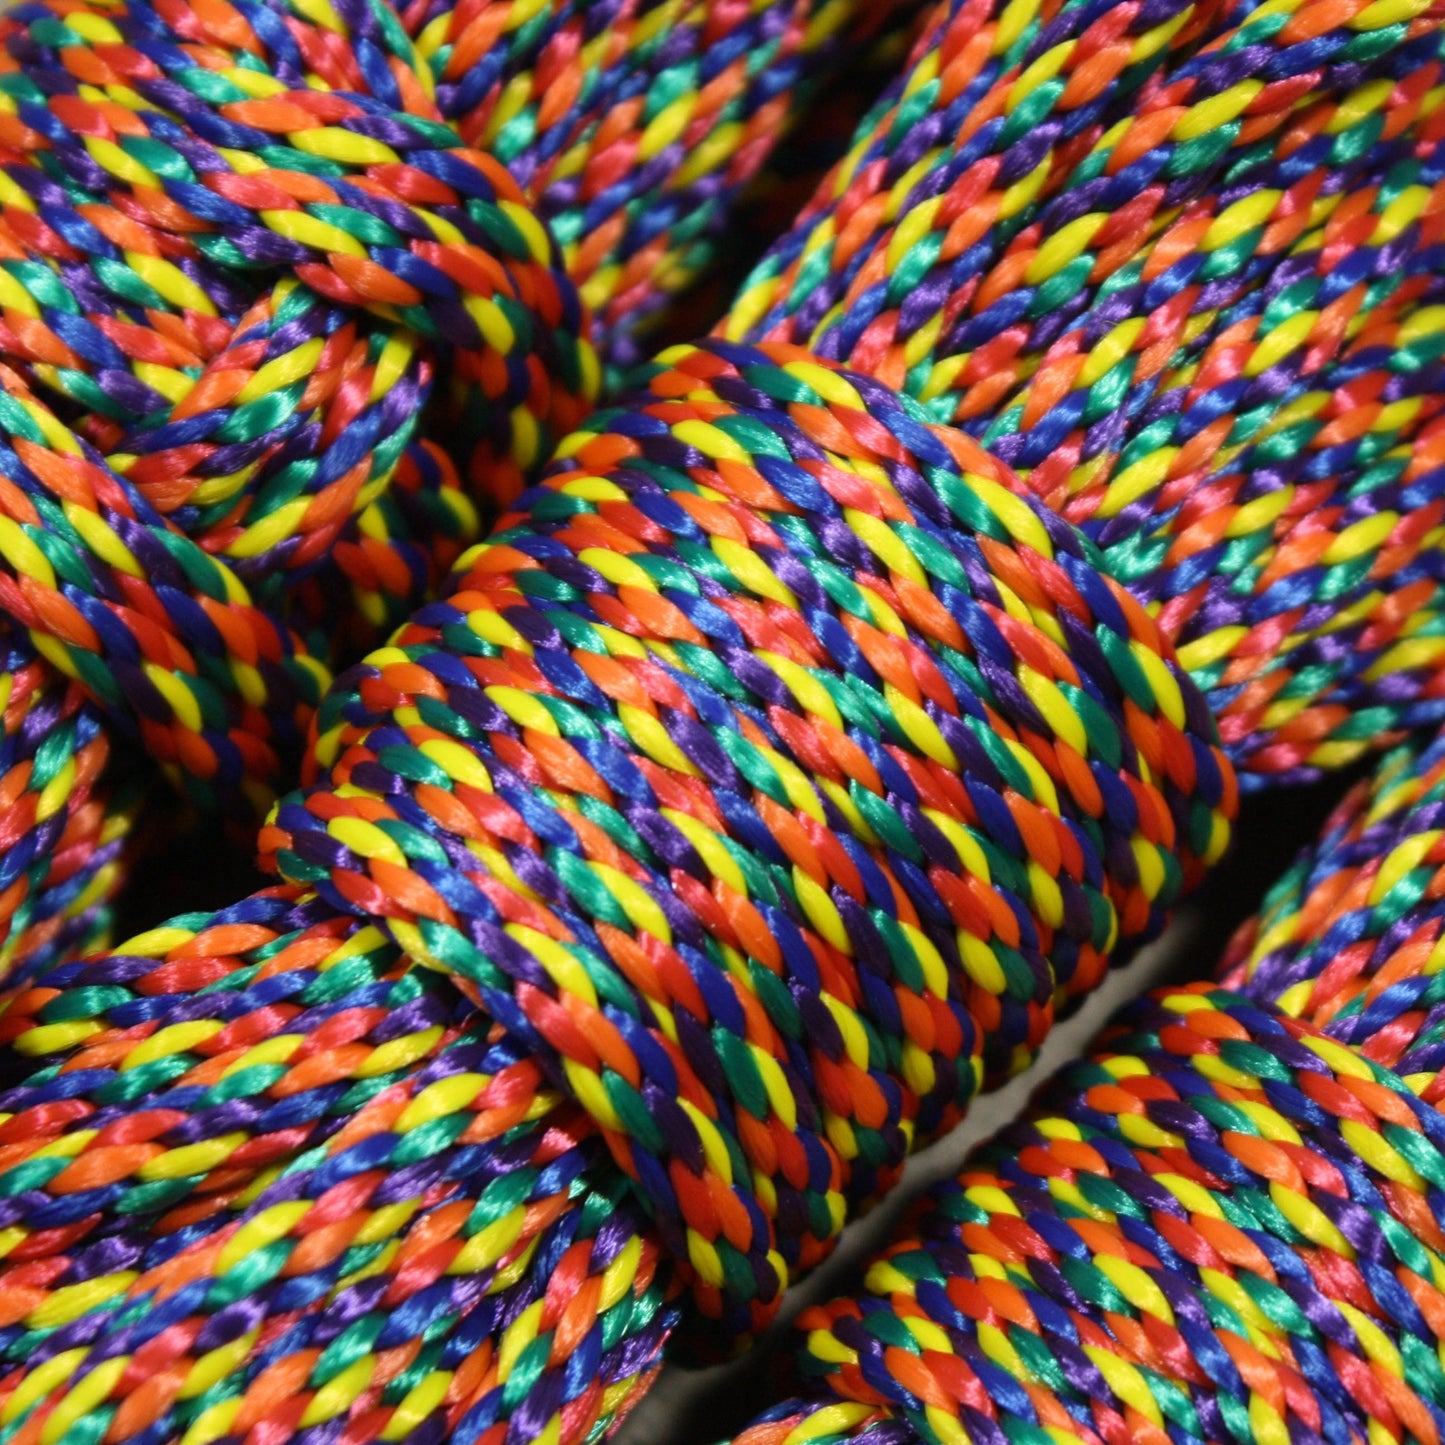 Regenbogen-Bondage-Seil – 1/4" 6 mm MFP – für Shibari oder Aufhängung – Regenbogen-Seil!